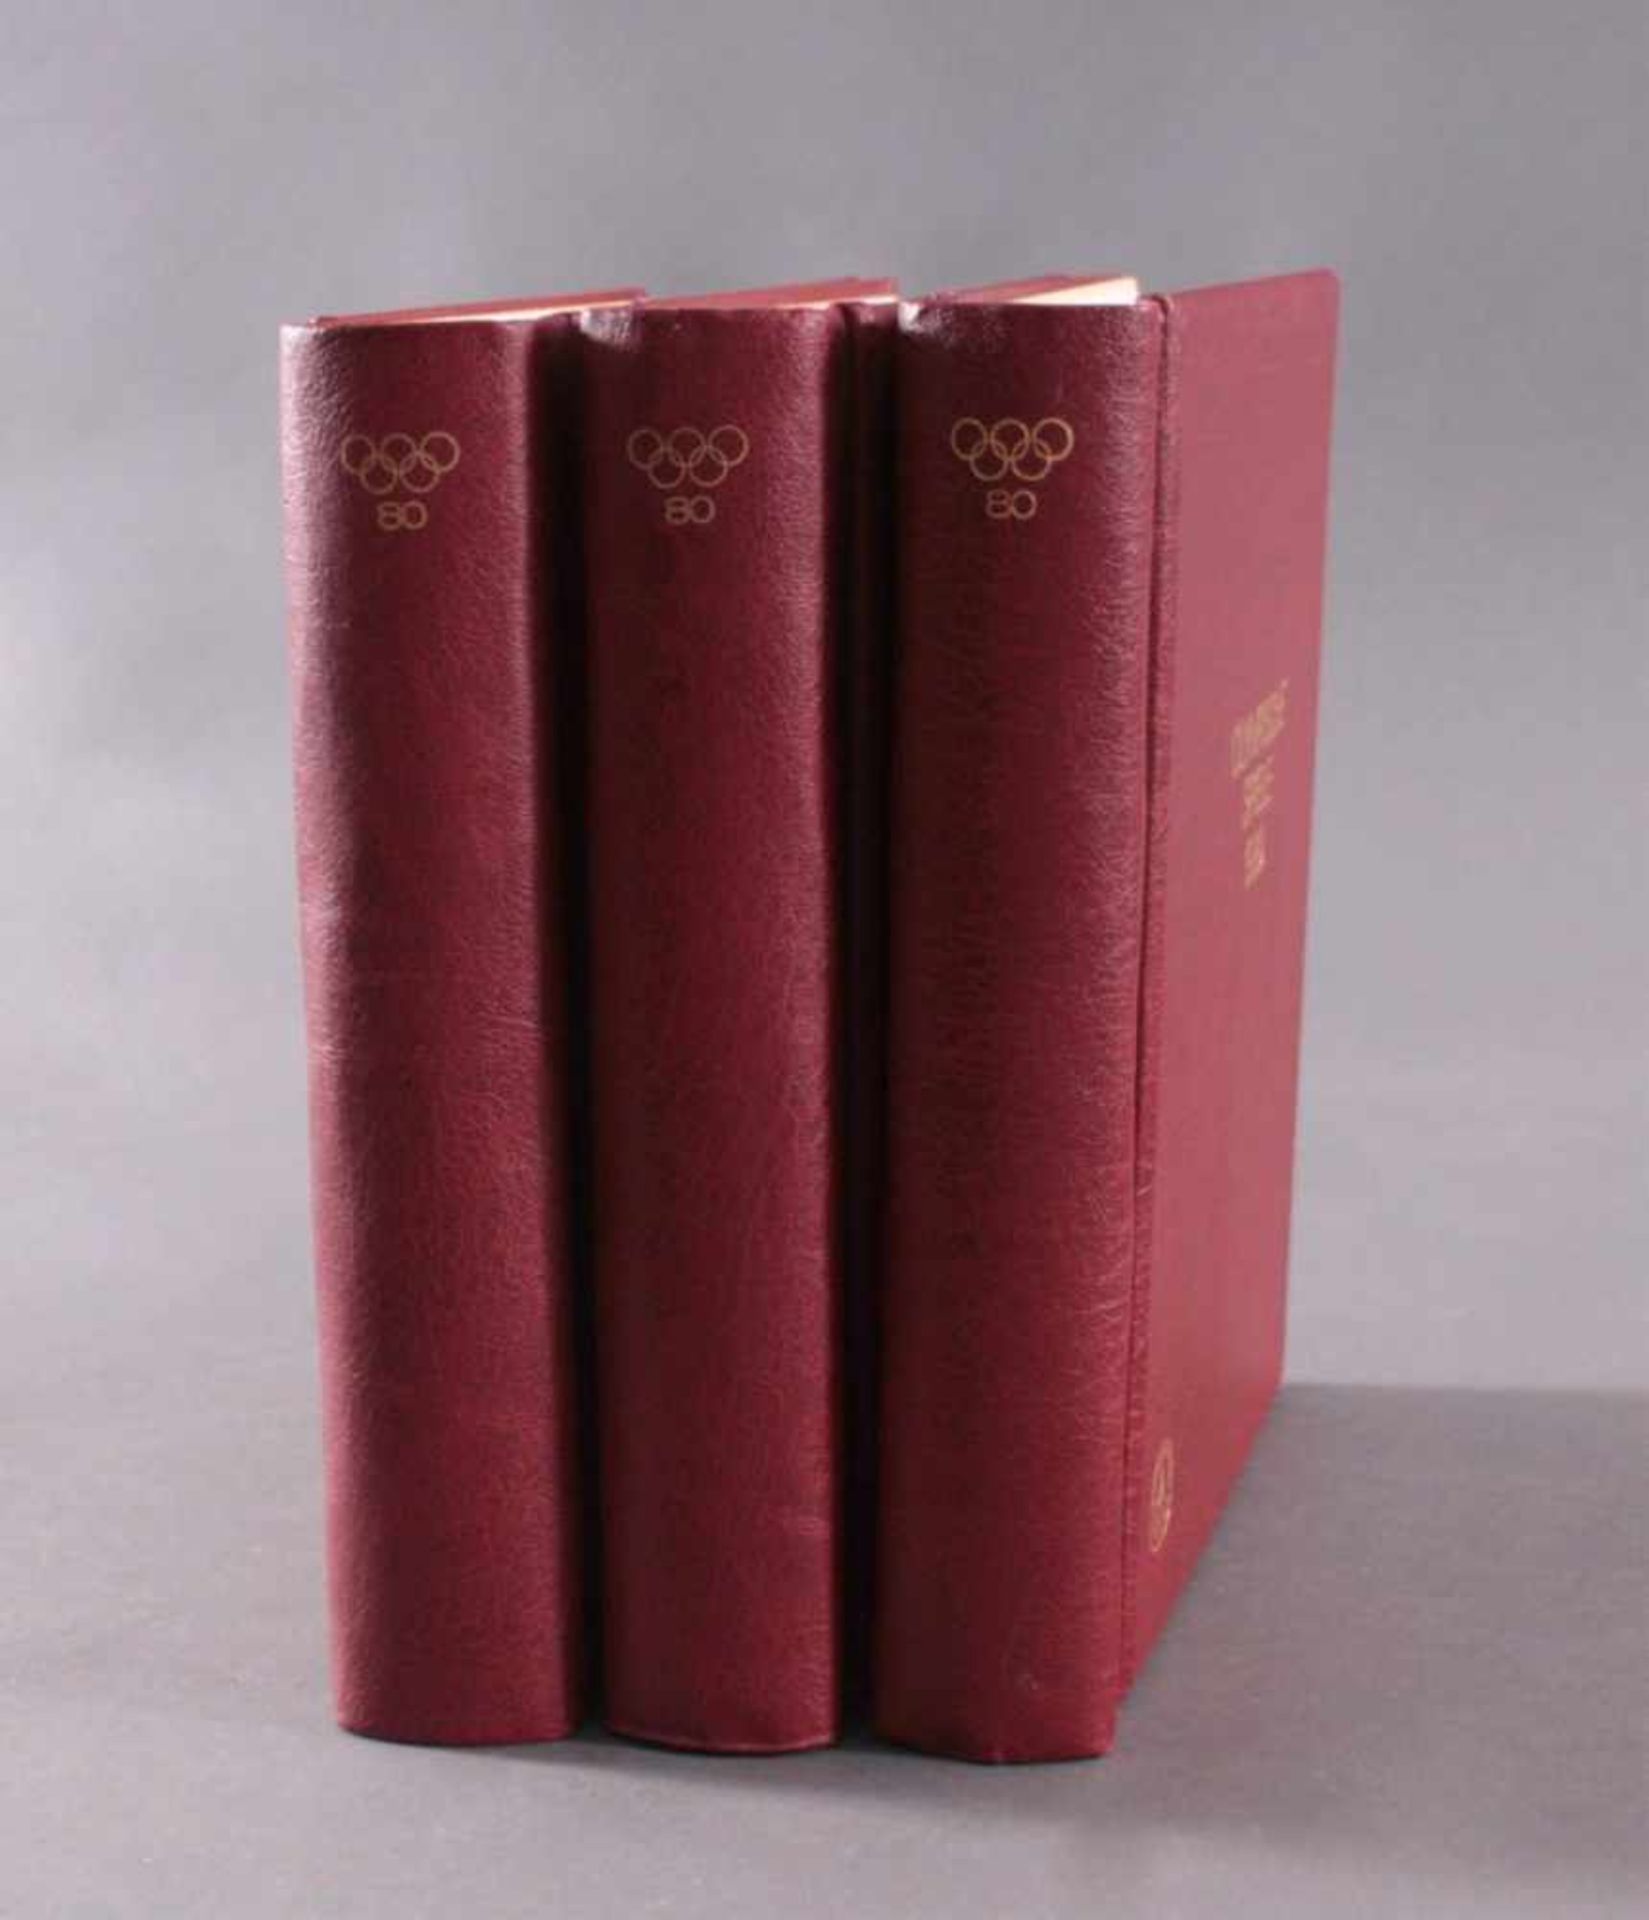 Olympische Spiele 1980Abobezug in 3 Alben. Offizielle Alben der deutschenSporthilfe zu den